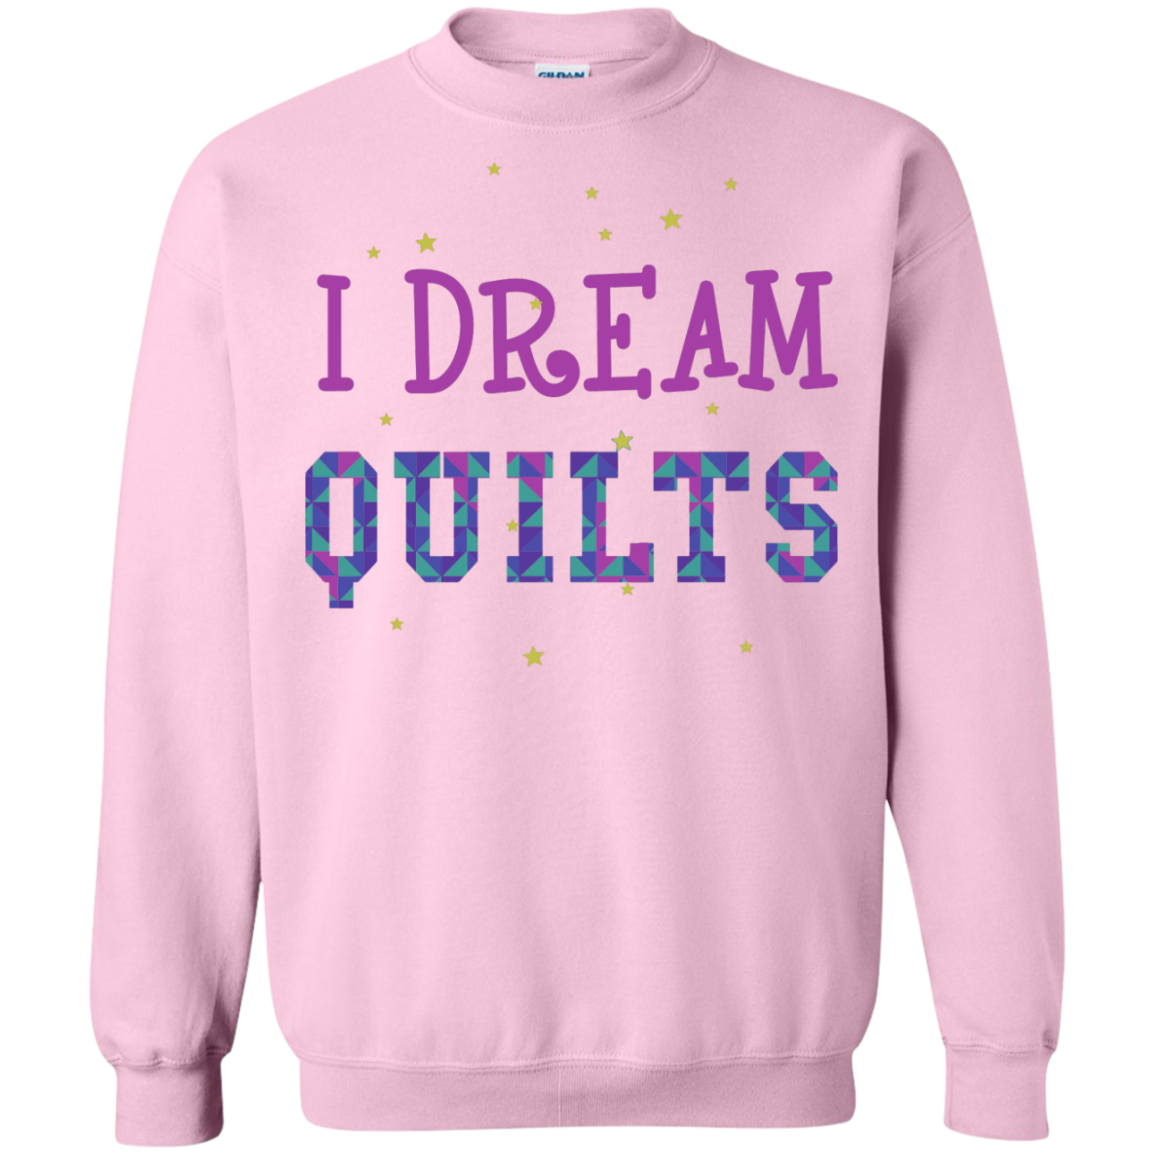 I Dream Quilts Crewneck Sweatshirt - Crafter4Life - 9